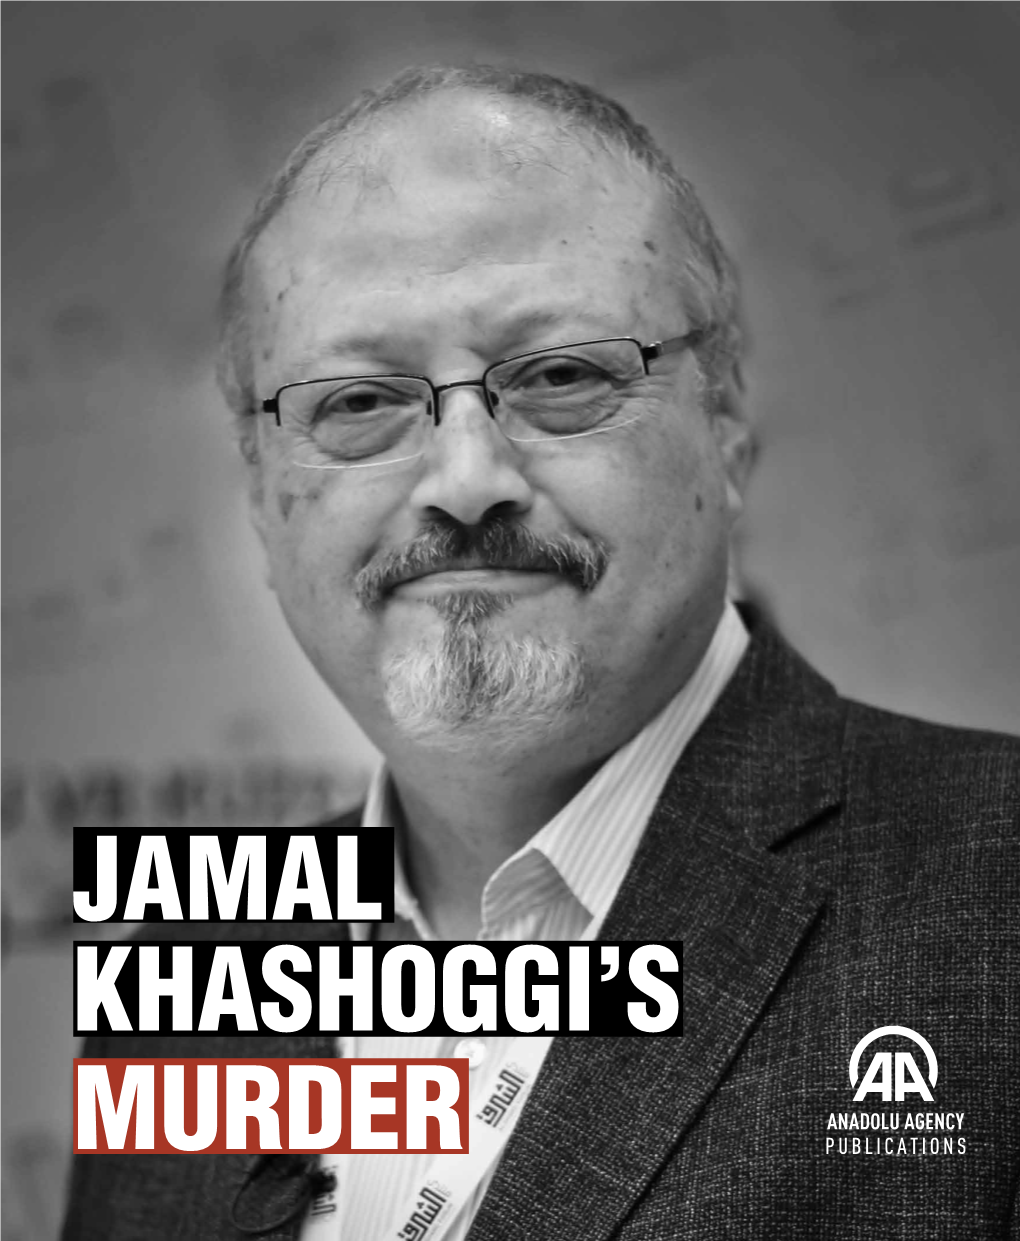 Jamal Khashoggi's Murder